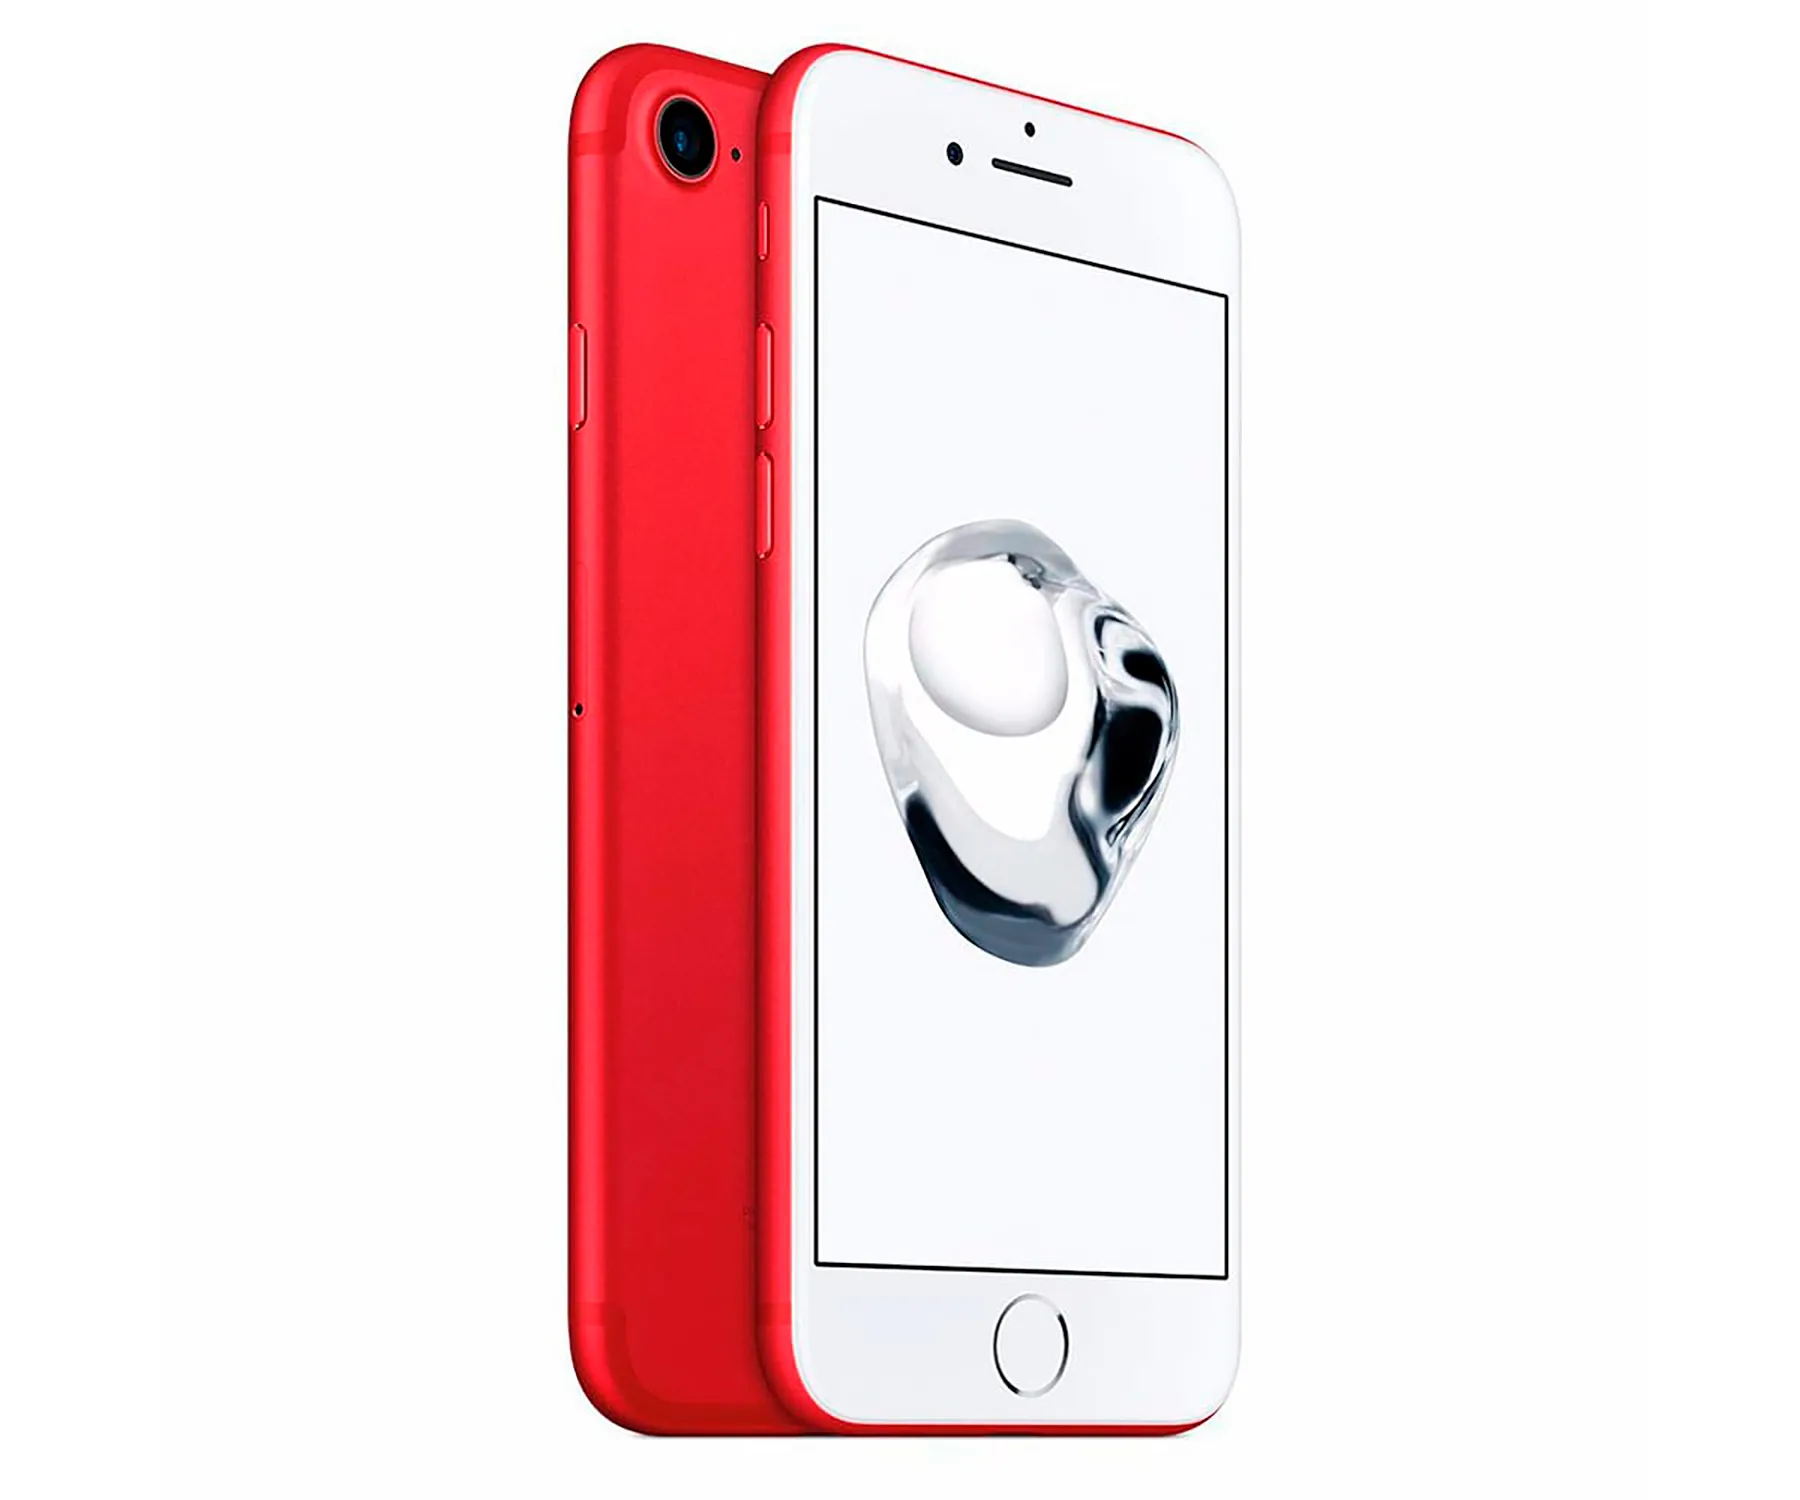 Apple Iphone 7 Red / Reacondicionado / 2+128gb / 4.7" Hd+ (1)